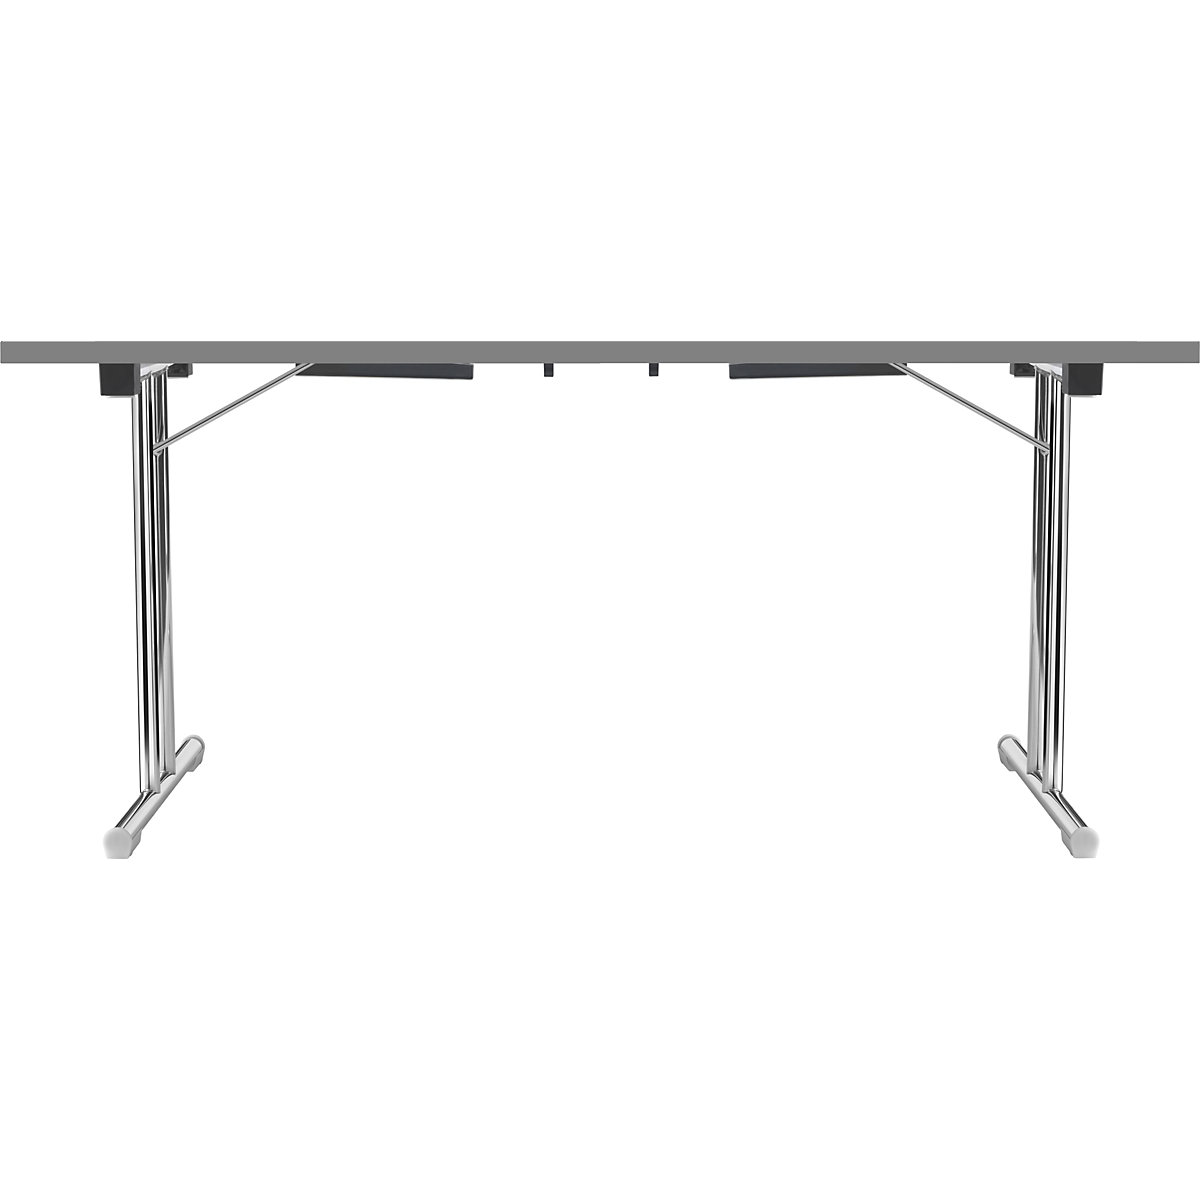 Tavolo pieghevole con basamento a T doppio, telaio in tubo tondo d'acciaio, cromato, bianco/antracite, largh. x prof. 1400 x 700 mm-6